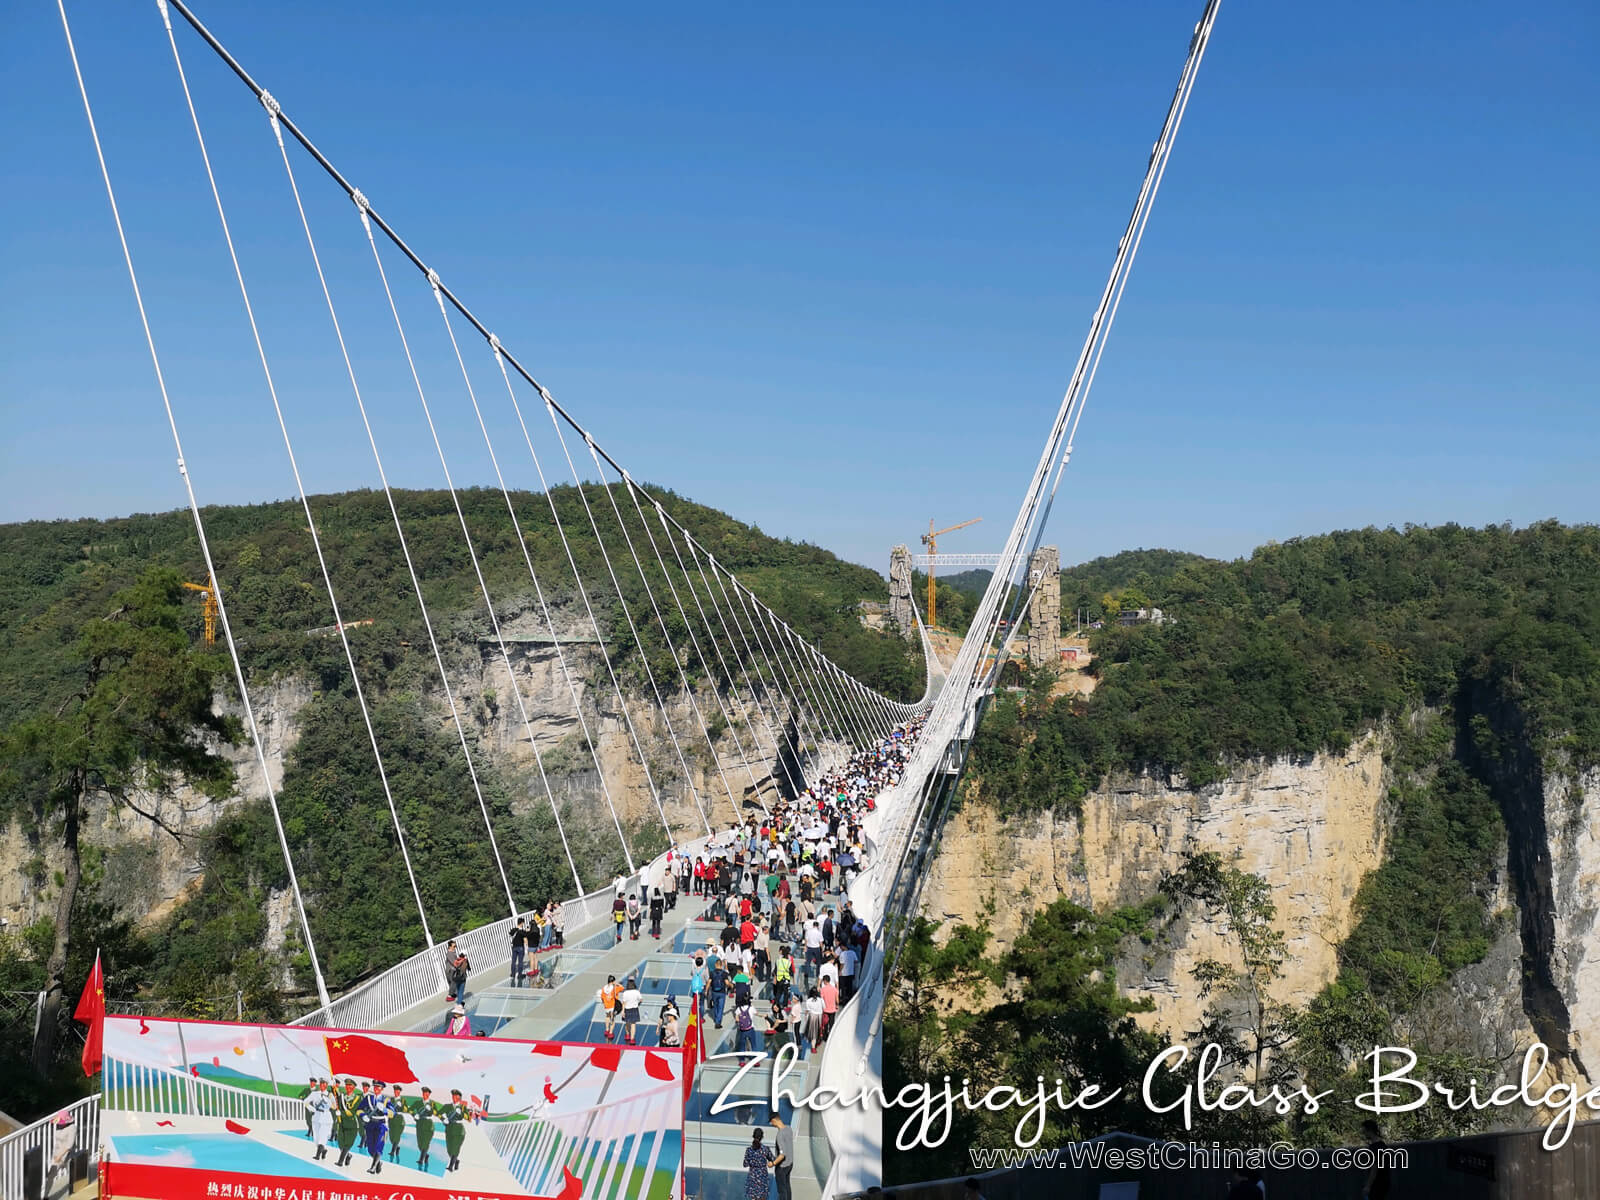 zhangjiajie Grand Canyon Glass Bridge tour